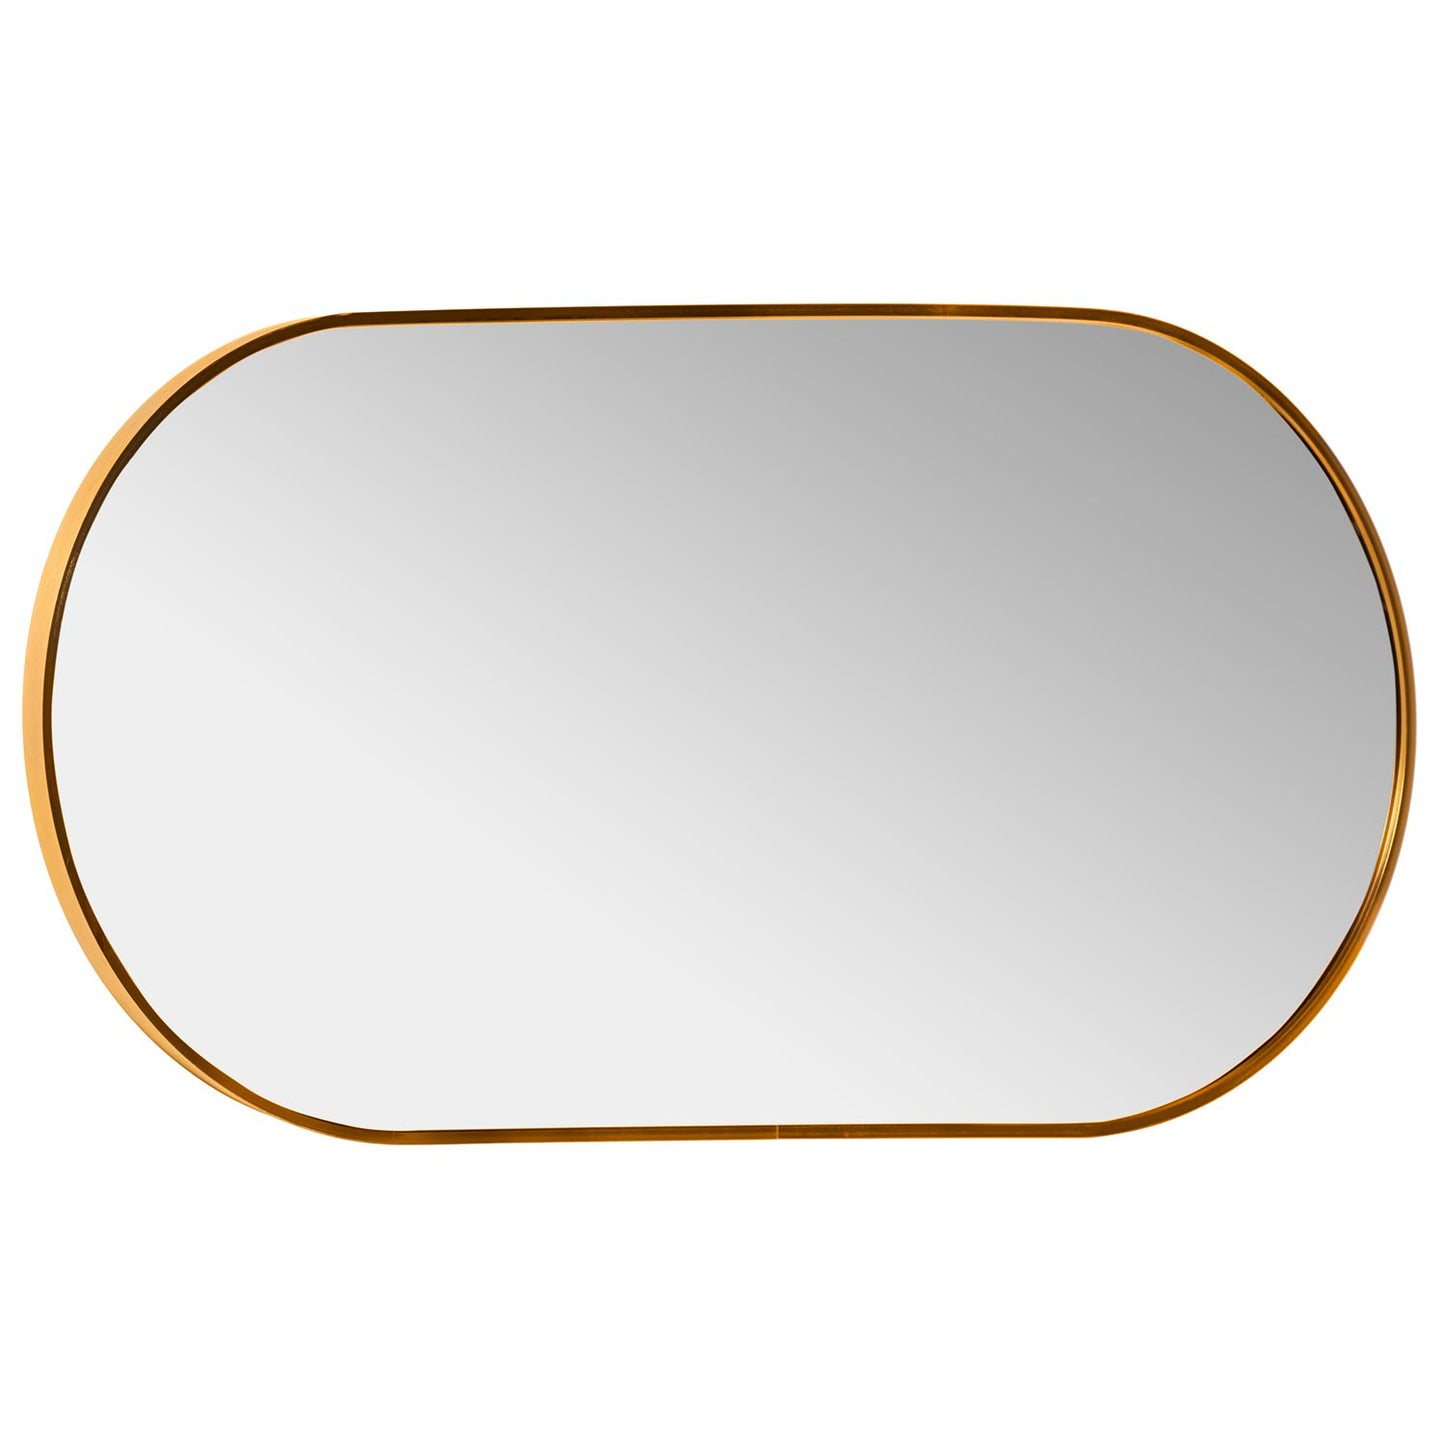 Coimbra spegel